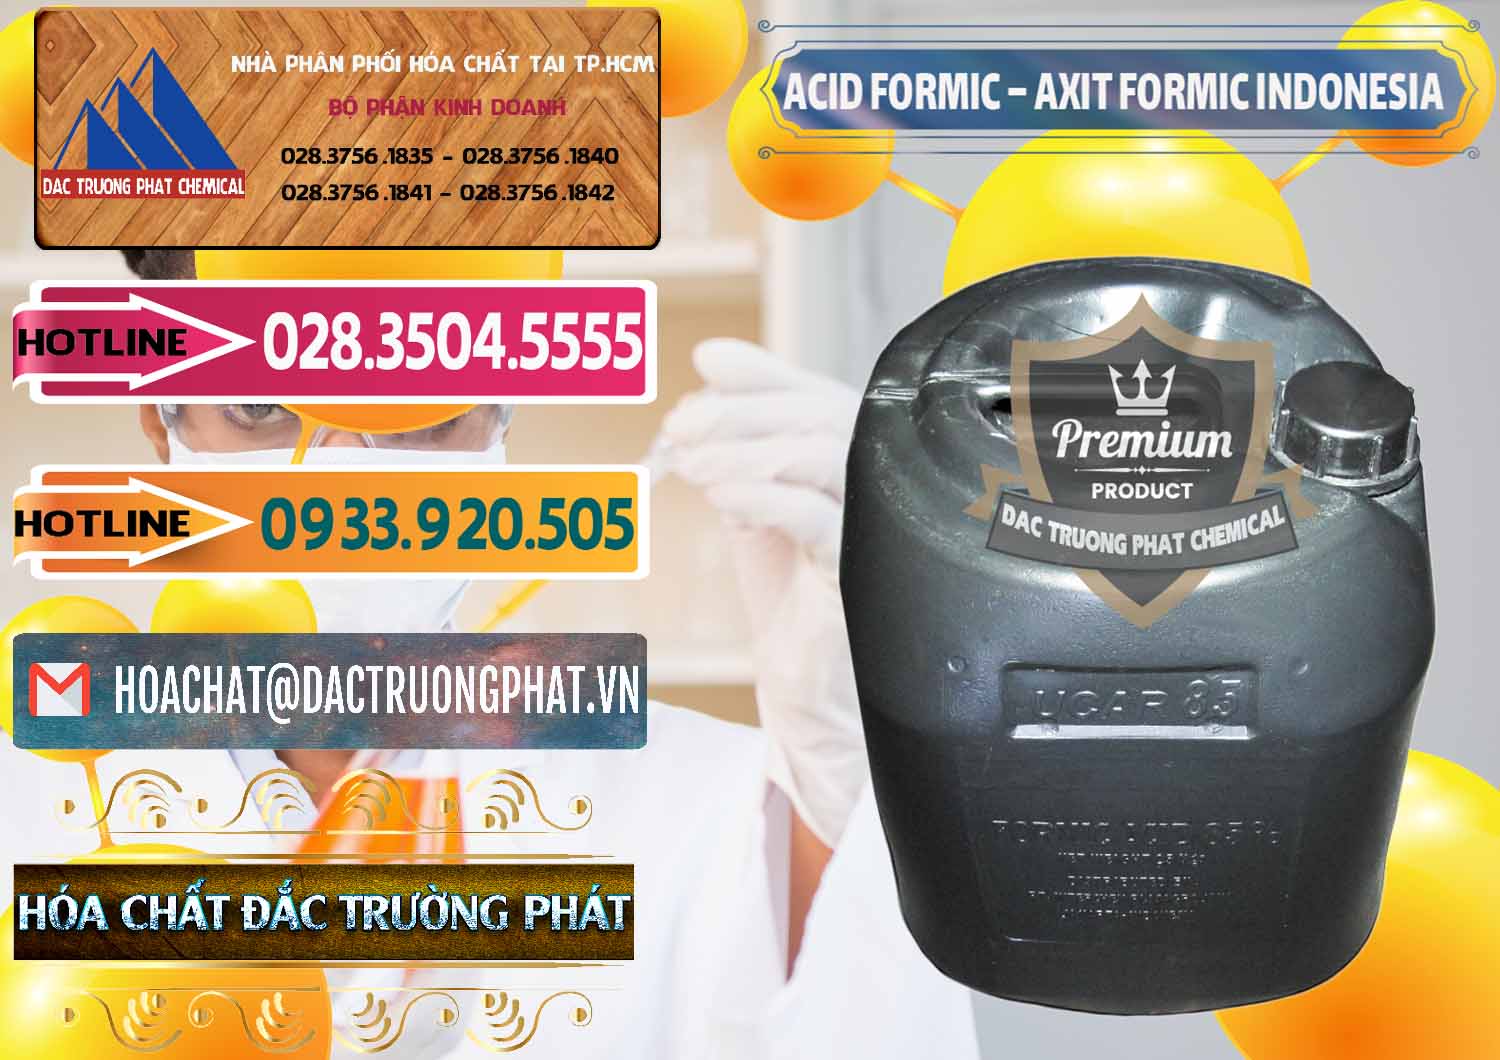 Công ty nhập khẩu và bán Acid Formic - Axit Formic Indonesia - 0026 - Đơn vị nhập khẩu - phân phối hóa chất tại TP.HCM - dactruongphat.vn